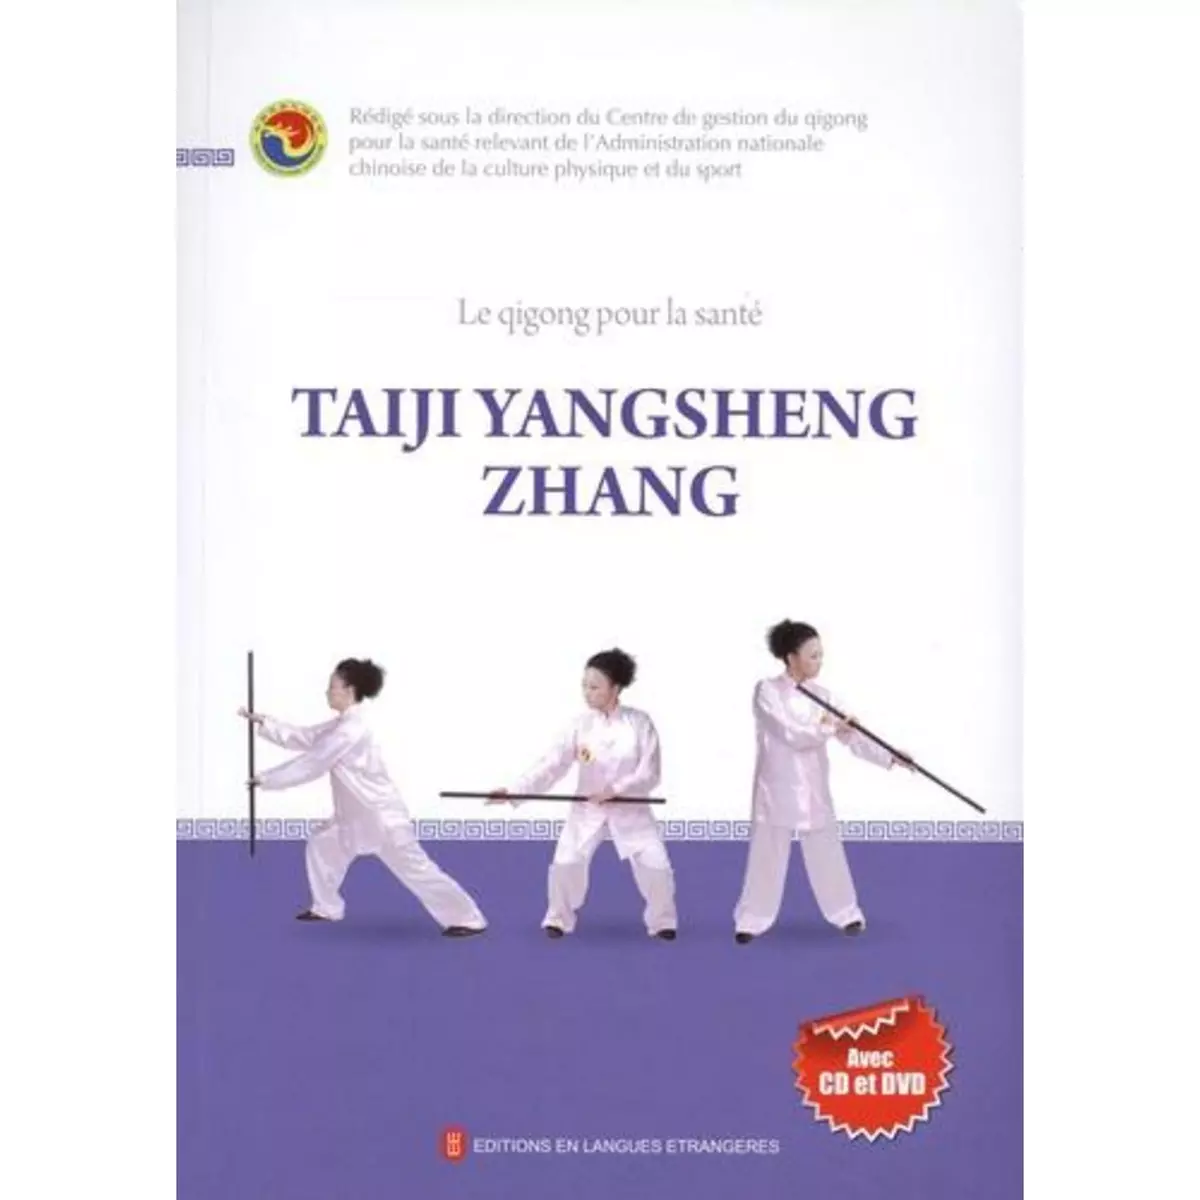  LE QIGONG POUR LA SANTE. TAIJI YANGSHENG ZHANG. AVEC 1 CD AUDIO, AVEC 1 DVD, Qigong pour la santé